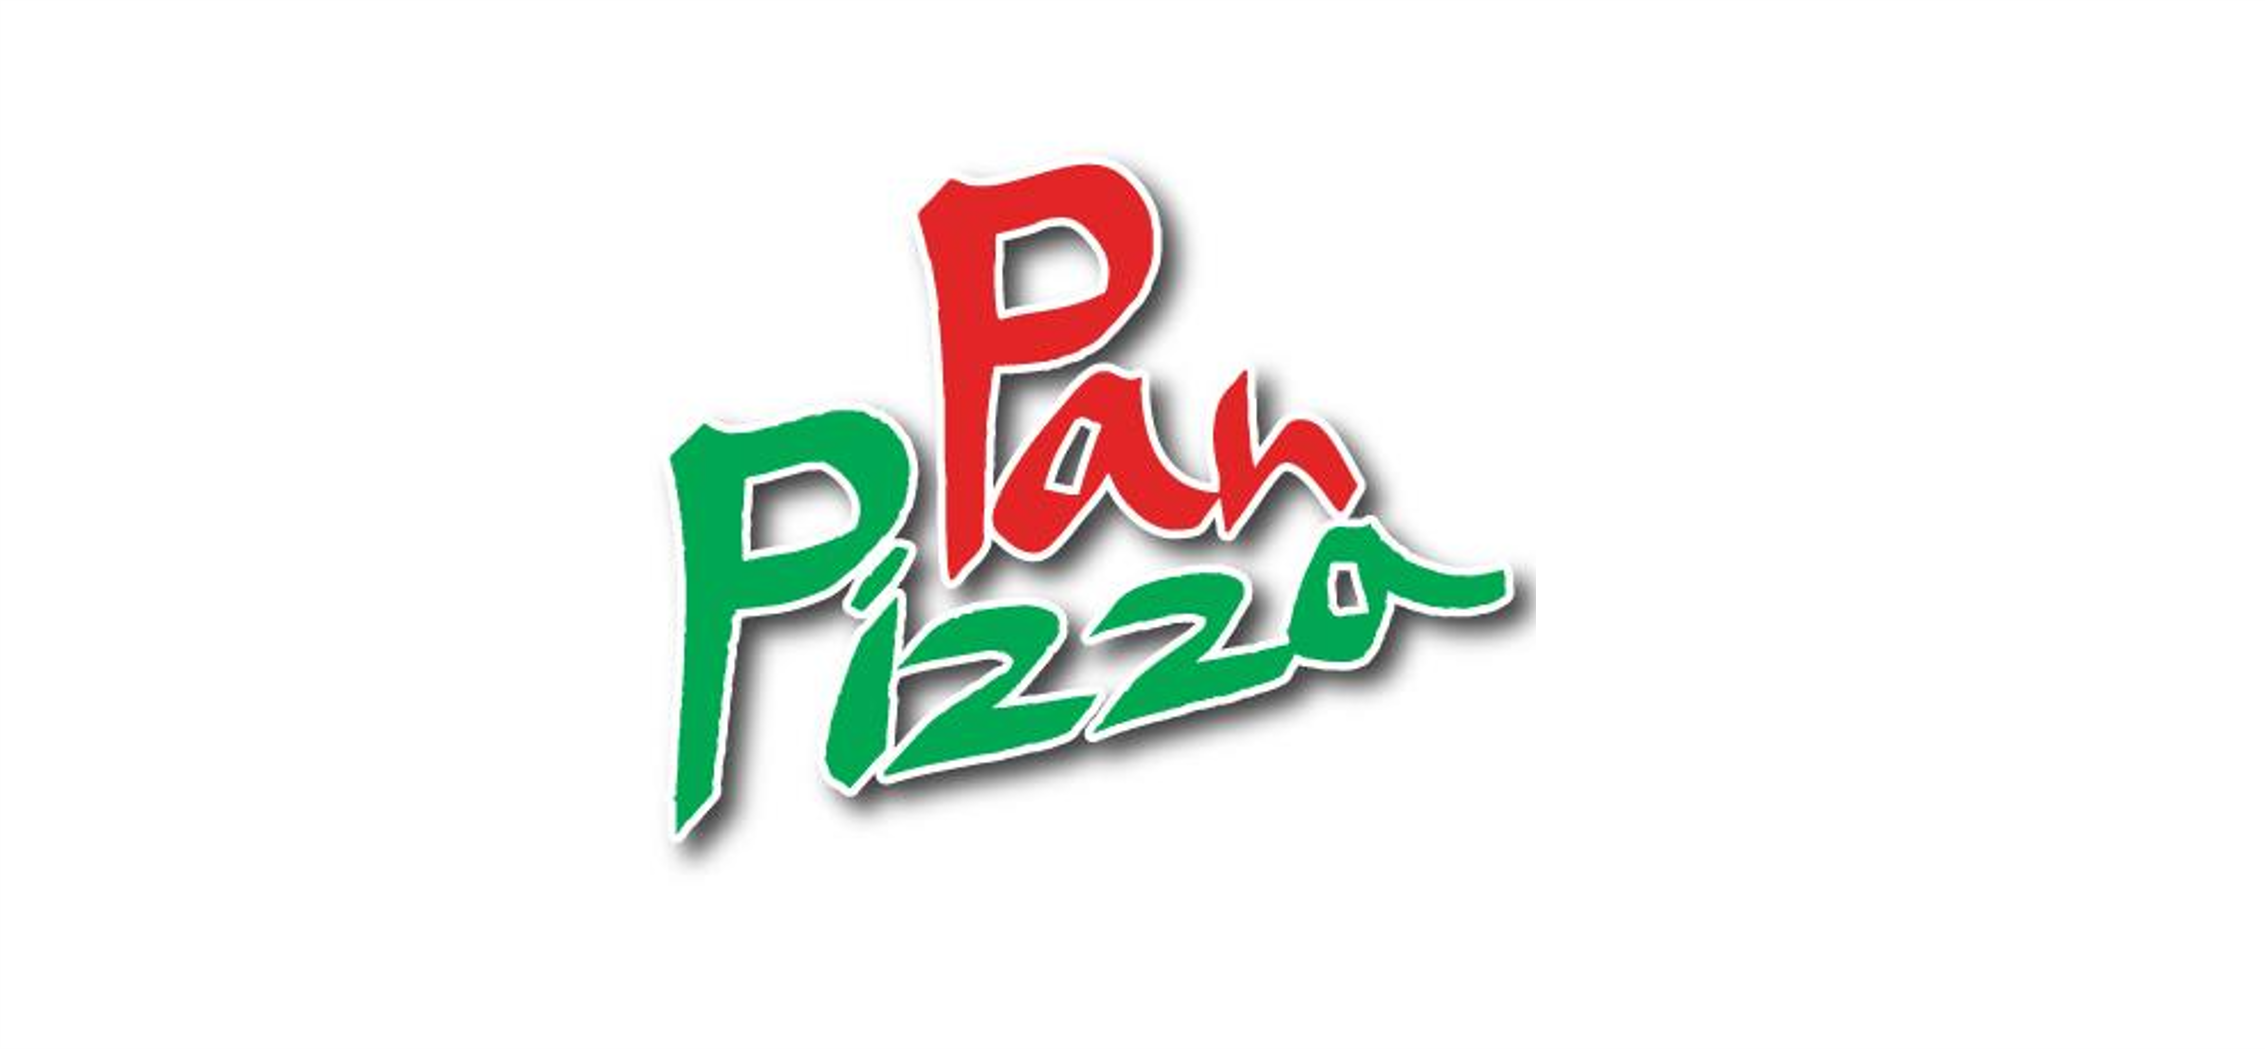 La pino'z pizza🍕 | Giant pizza, Pizza slice, Pizza